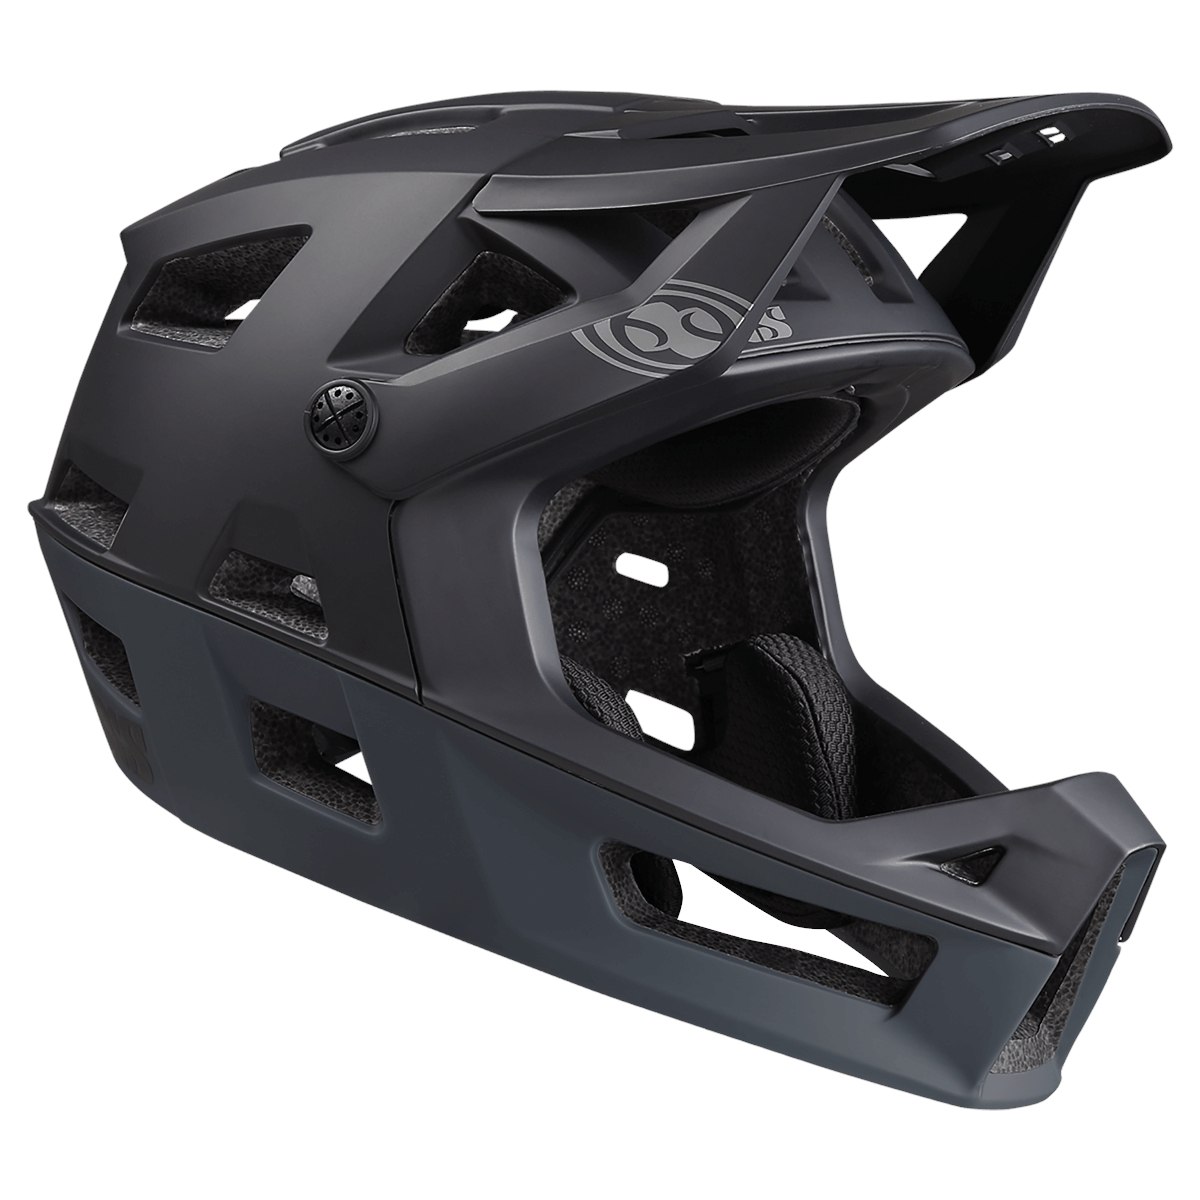 Produktbild von iXS Trigger Fullface Helm - black